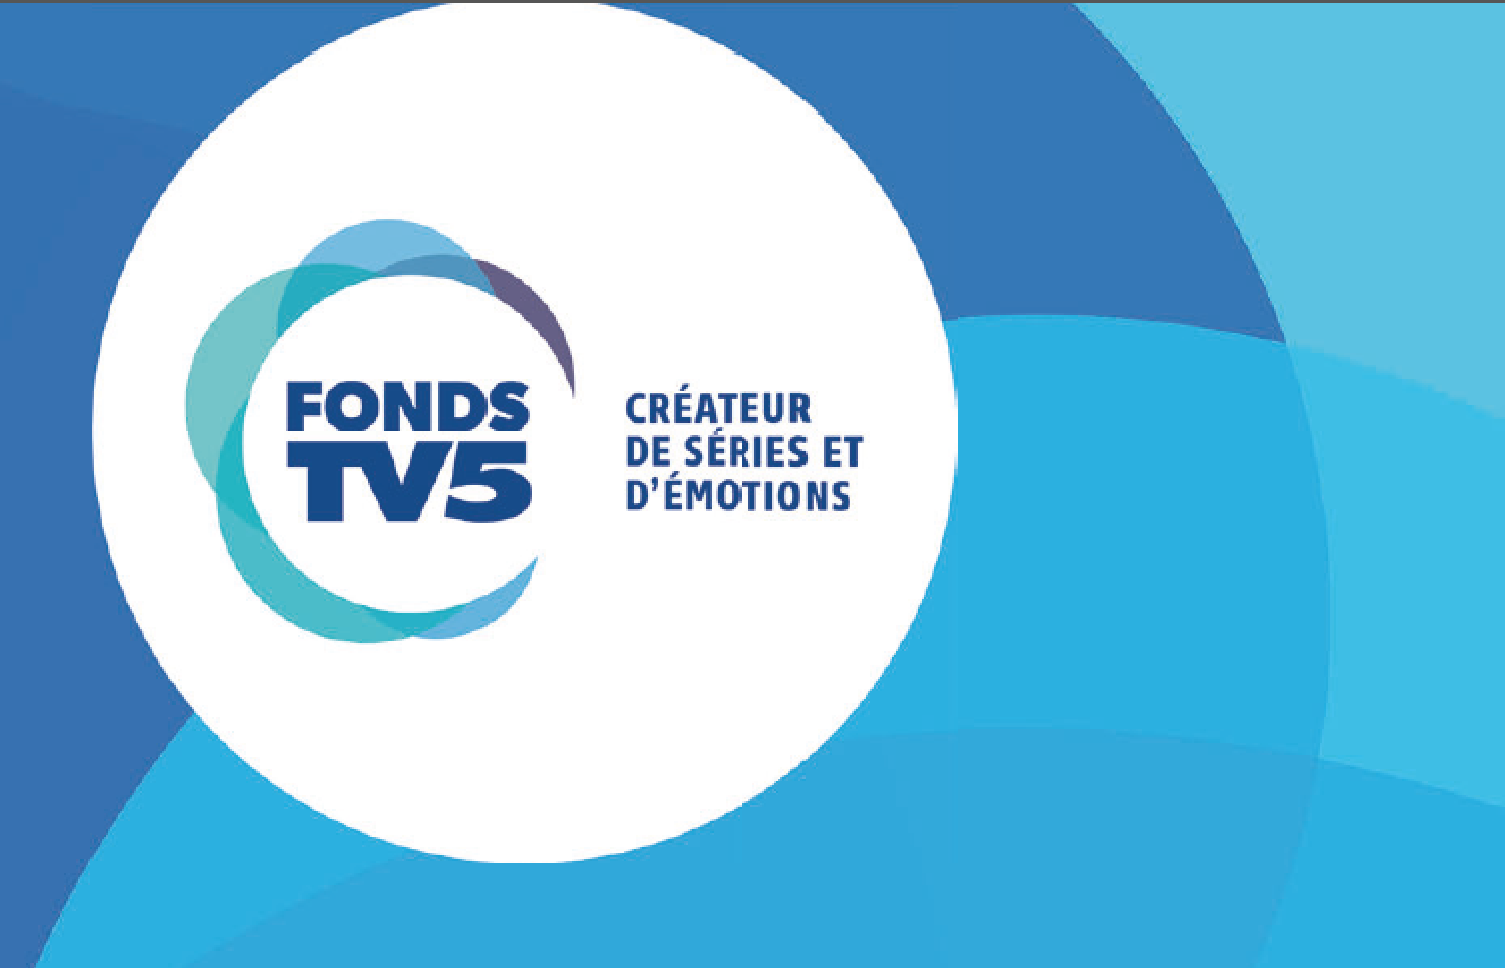 Le Fonds TV5 lance son 9e appel à projet